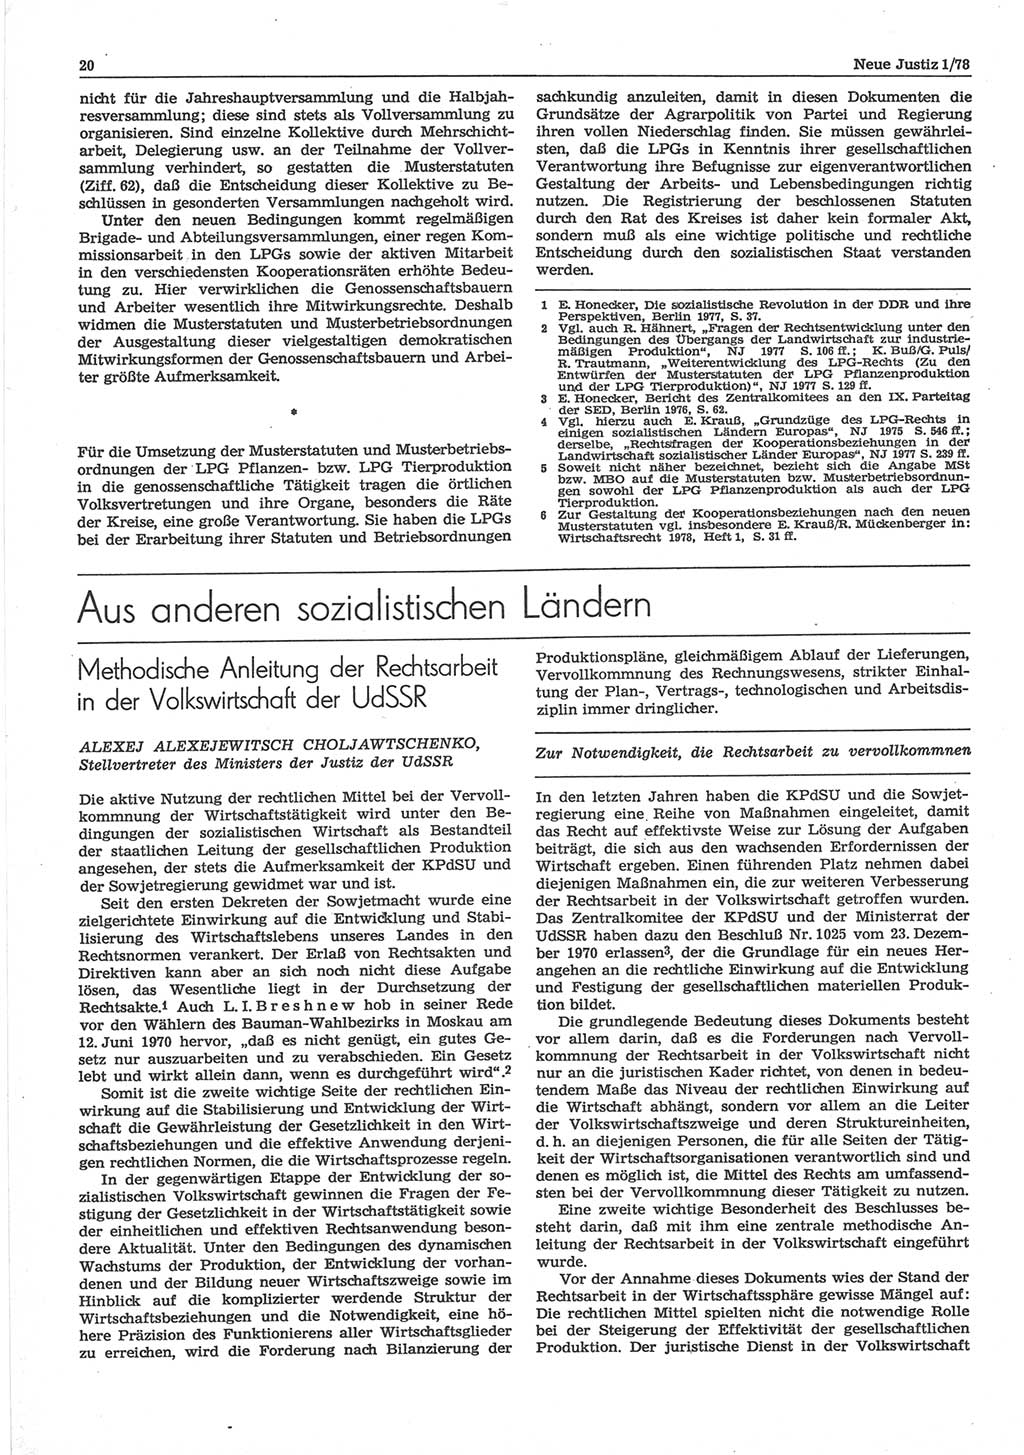 Neue Justiz (NJ), Zeitschrift für sozialistisches Recht und Gesetzlichkeit [Deutsche Demokratische Republik (DDR)], 32. Jahrgang 1978, Seite 20 (NJ DDR 1978, S. 20)